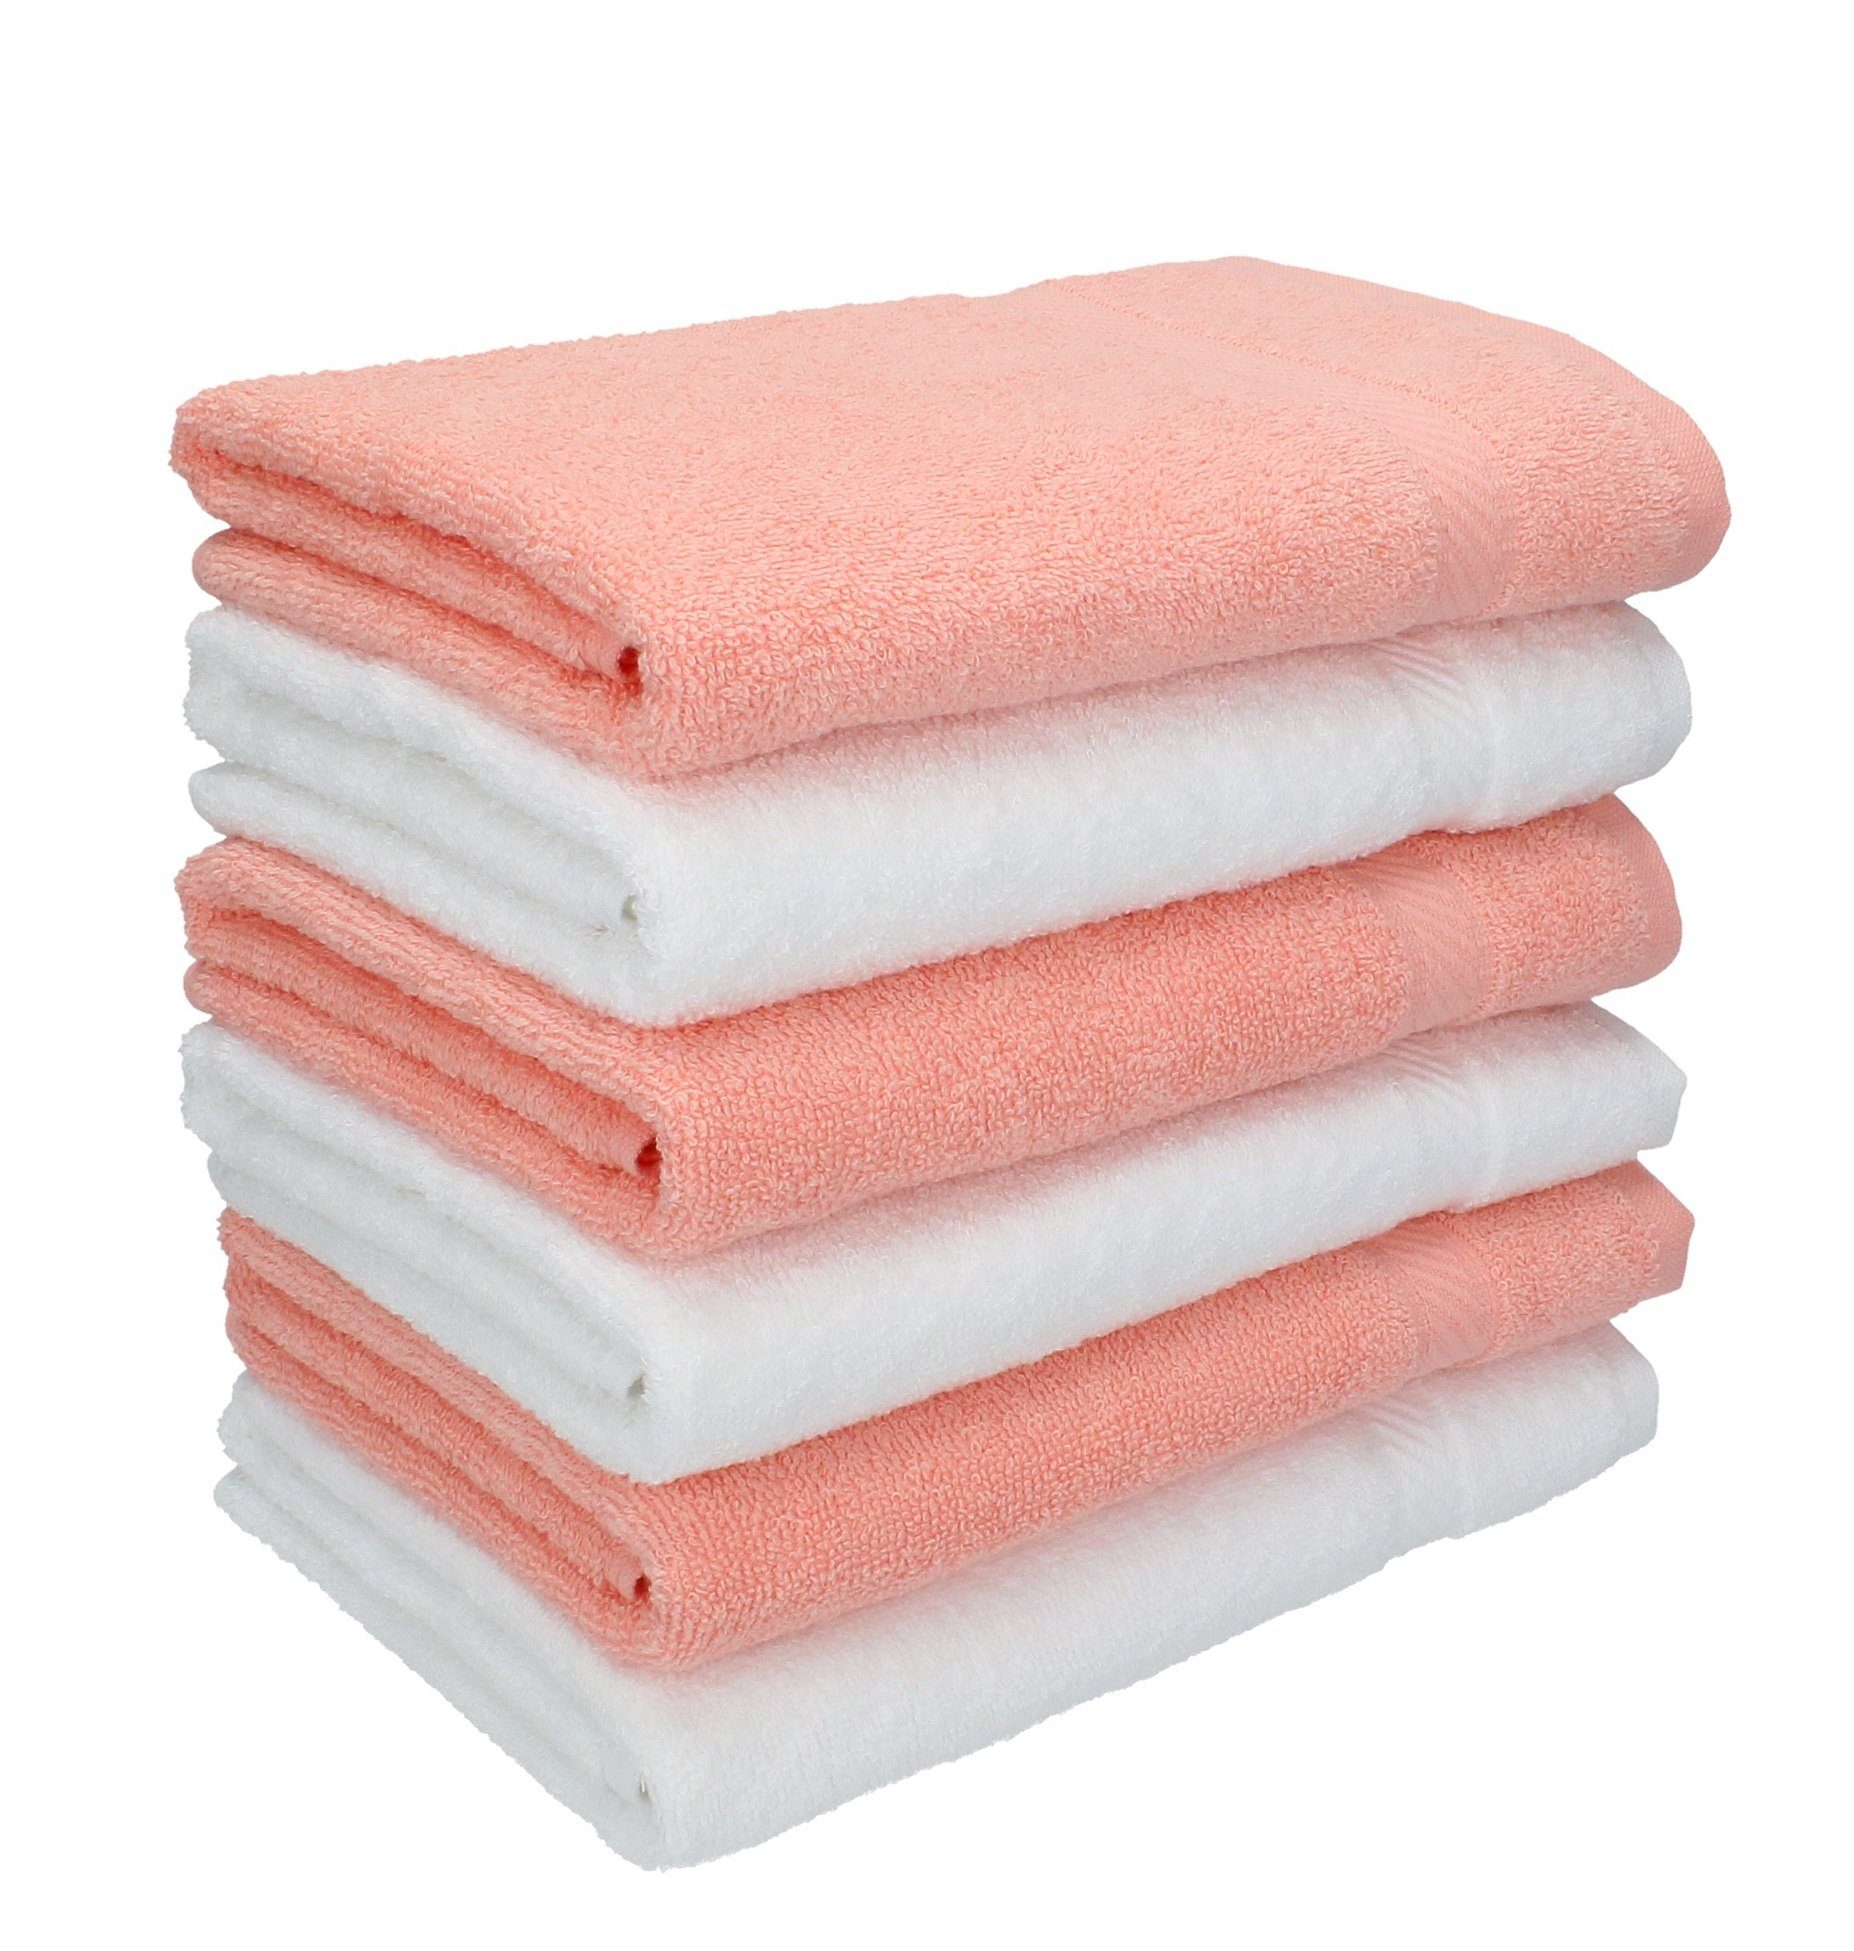 Betz Handtücher 6 Stück Handtücher Palermo Größe 50 x 100 cm Farbe weiß und apricot, 100% Baumwolle